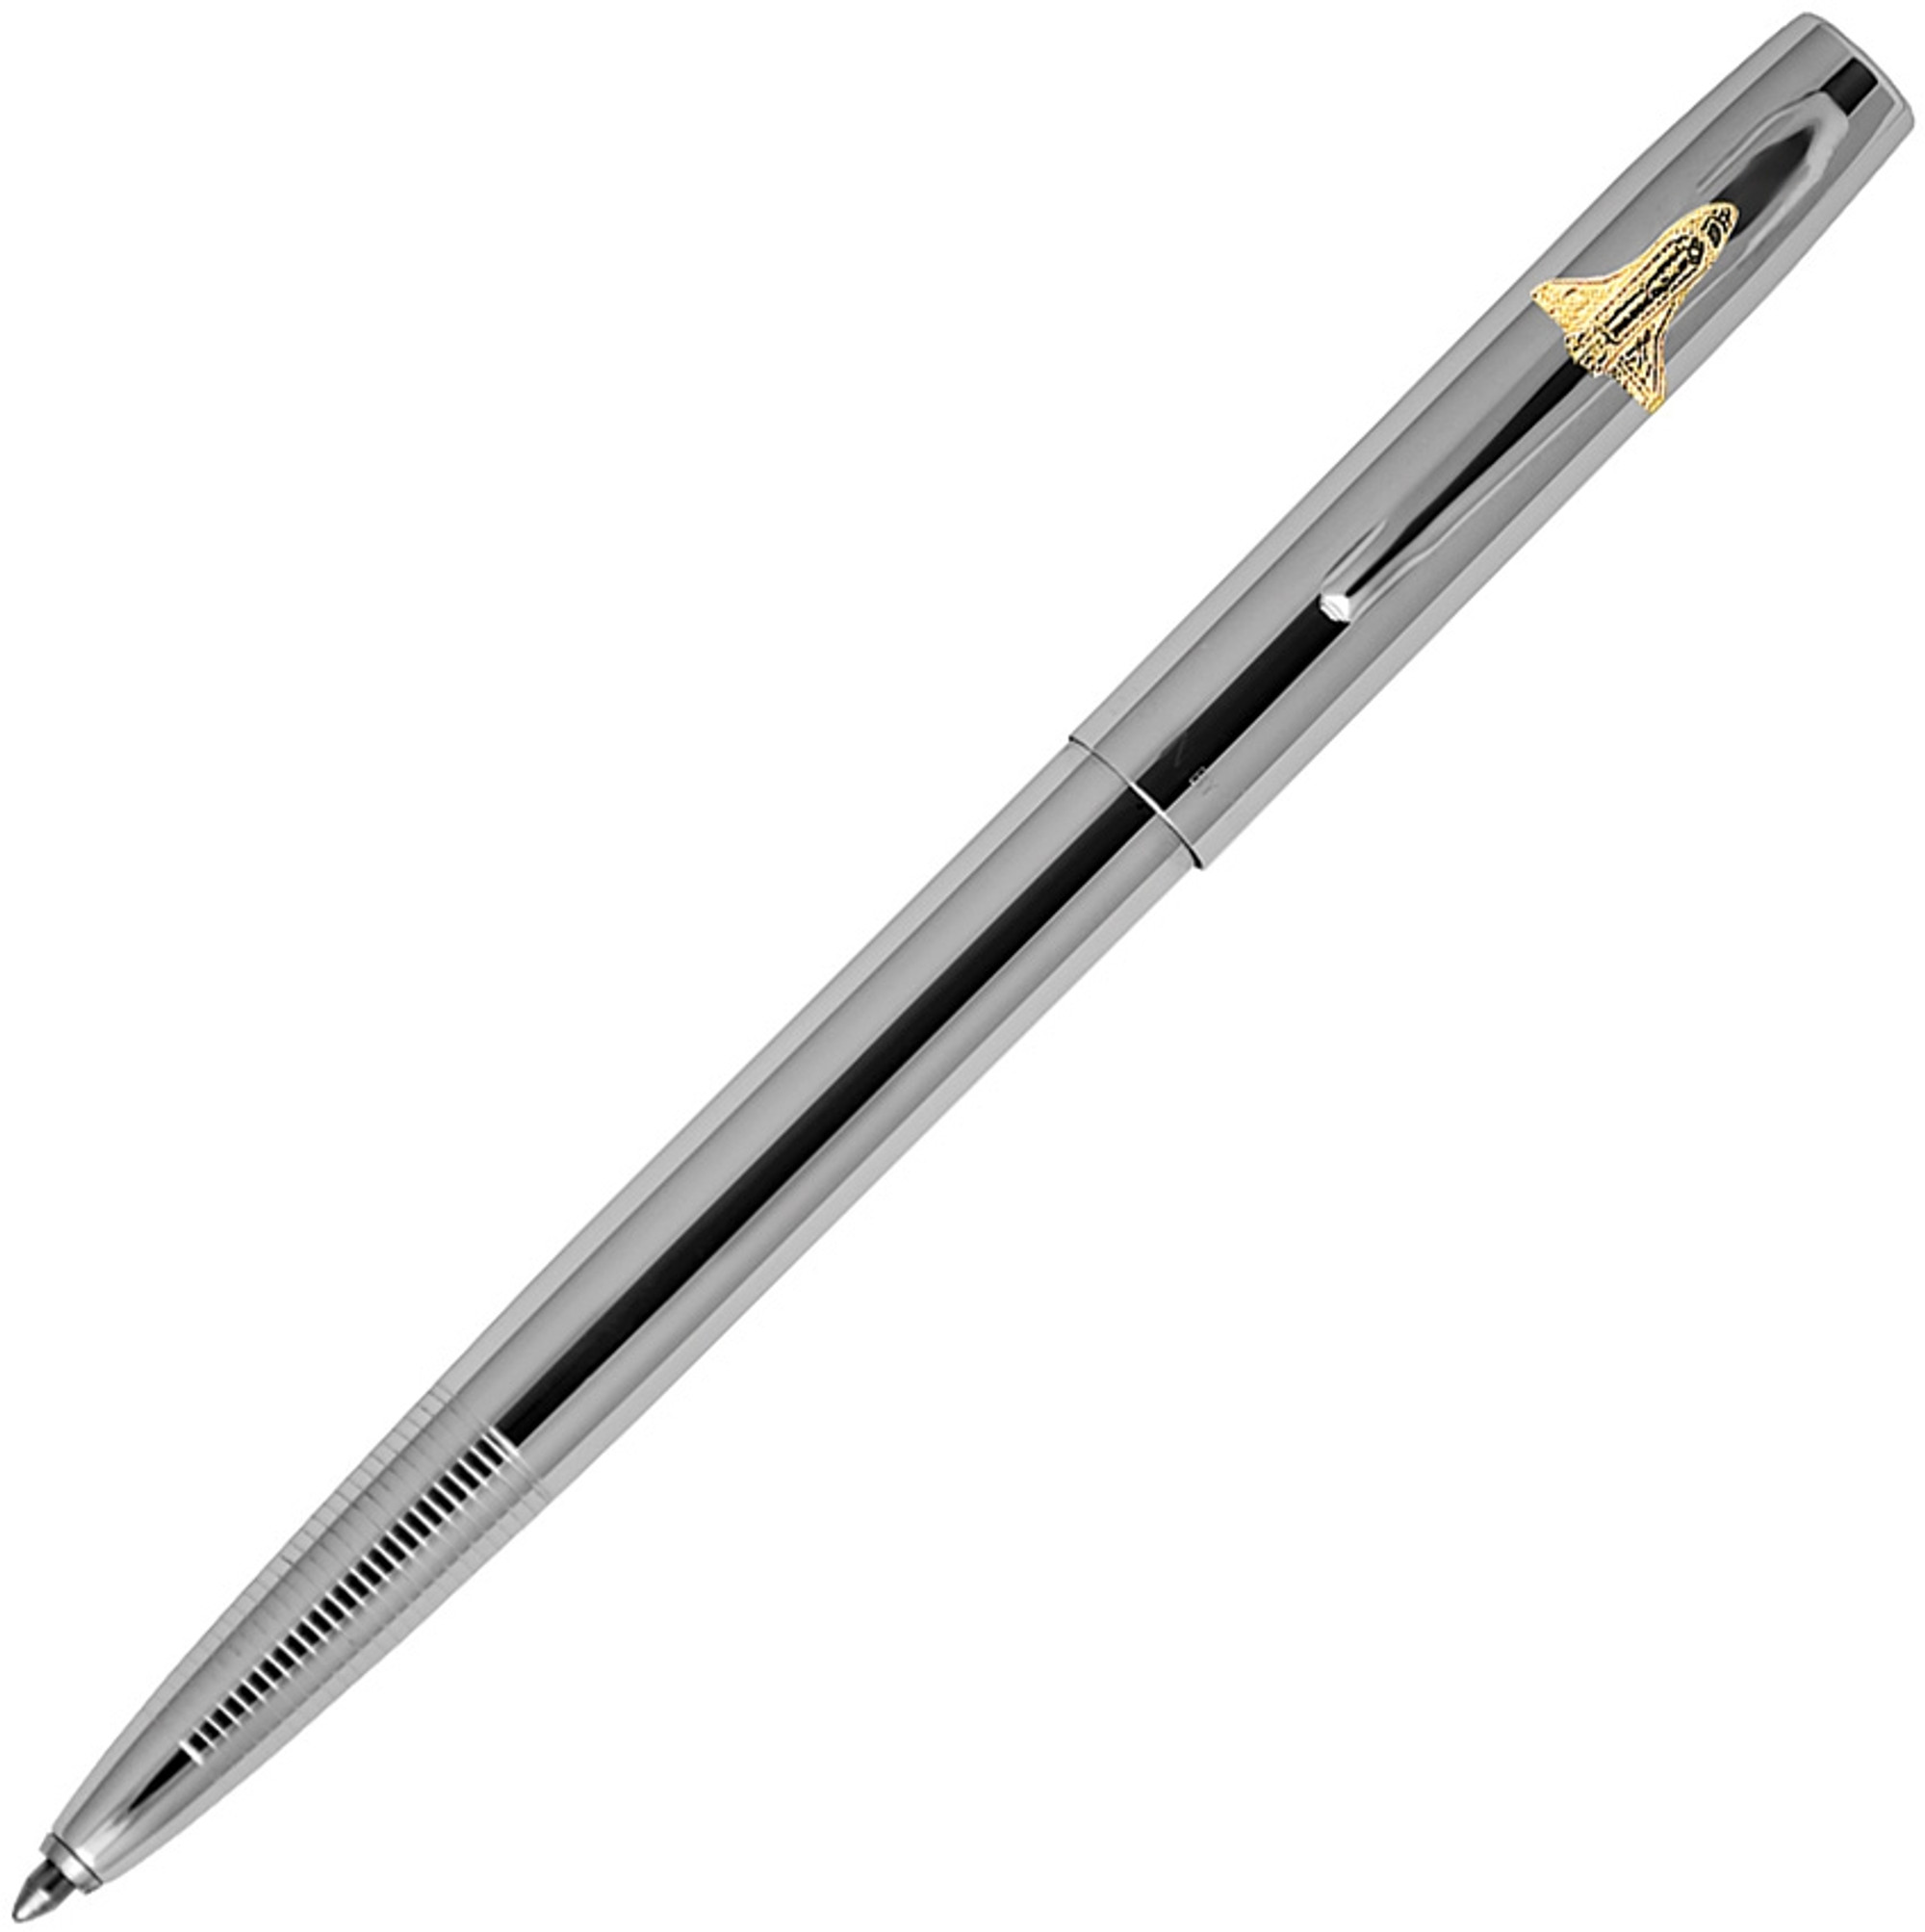 Chrome Space Pen